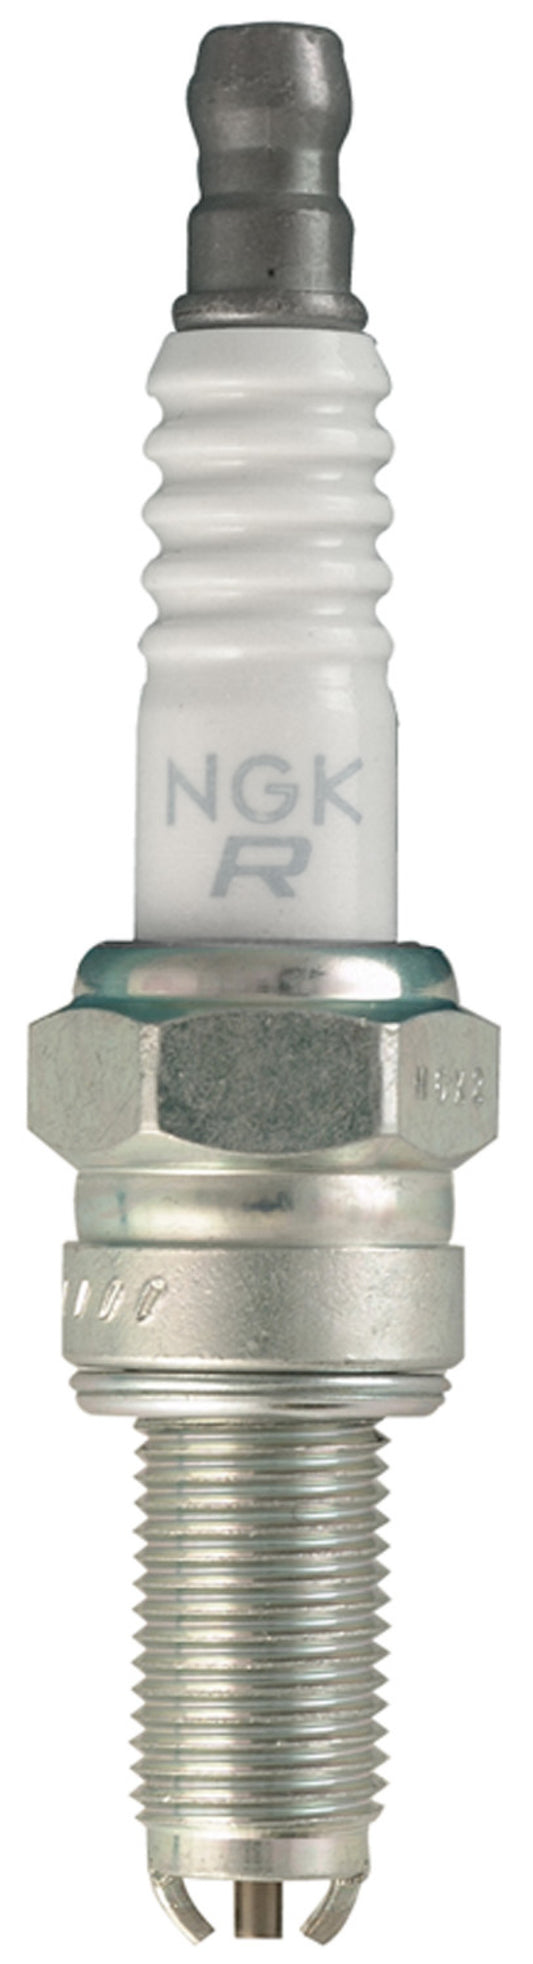 NGK Standard Spark Plug Box of 10 (CR8EKB)